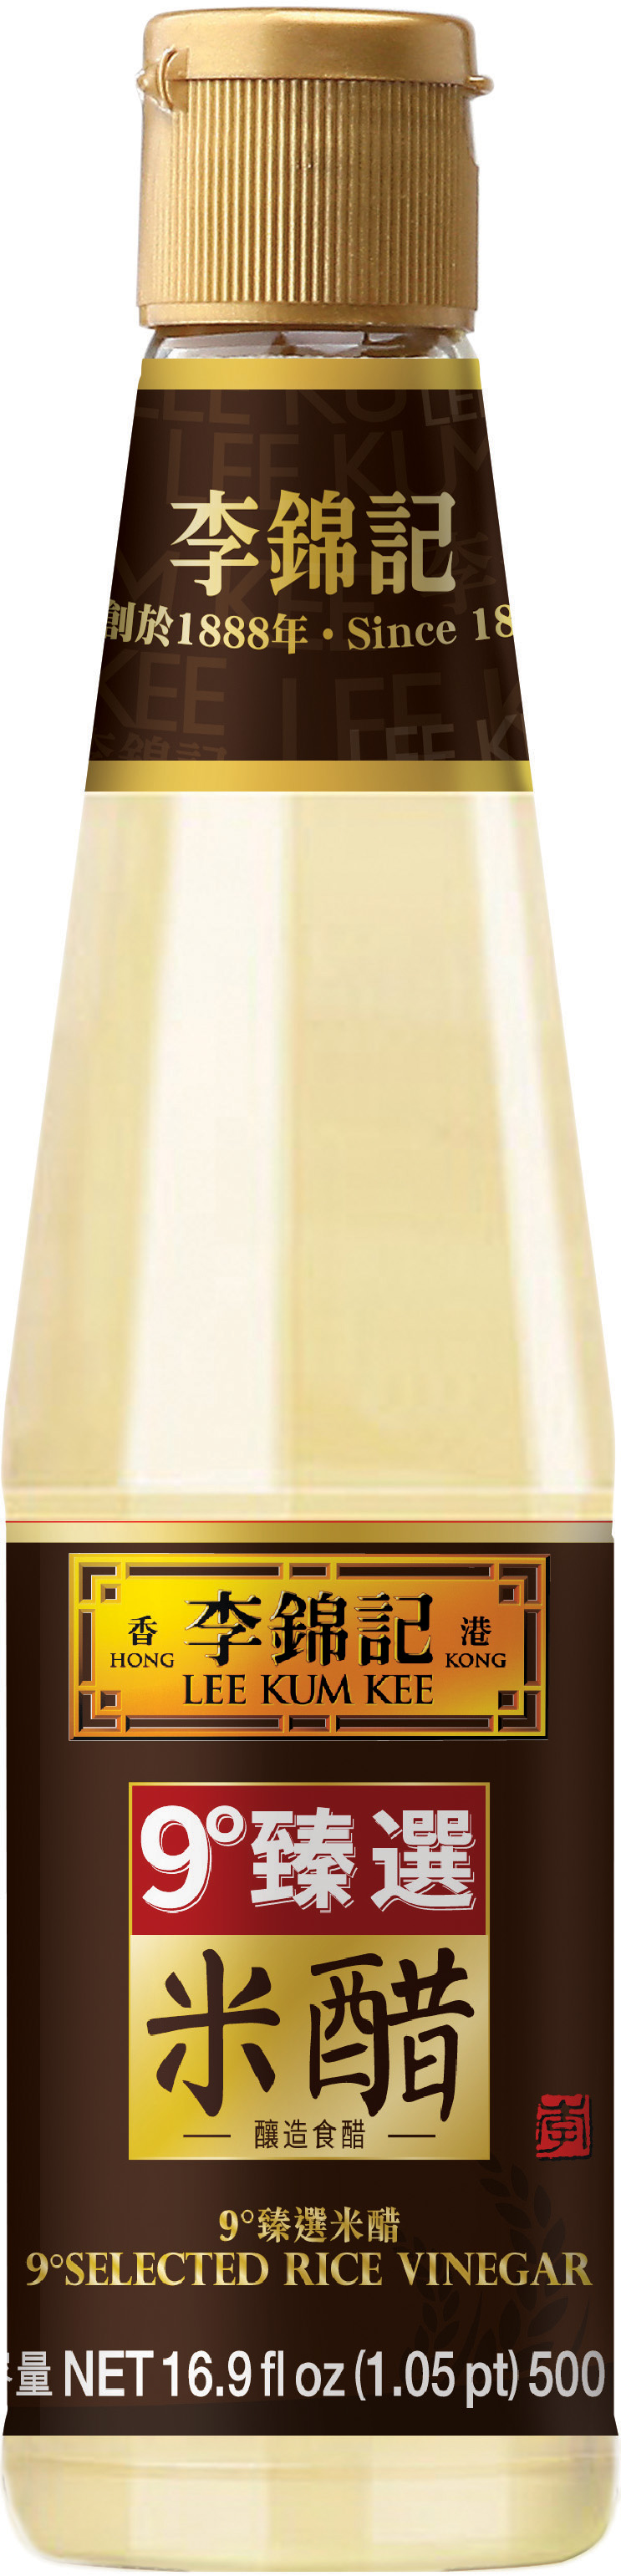 9°臻選米醋, 16.9 fl oz, 500 ml